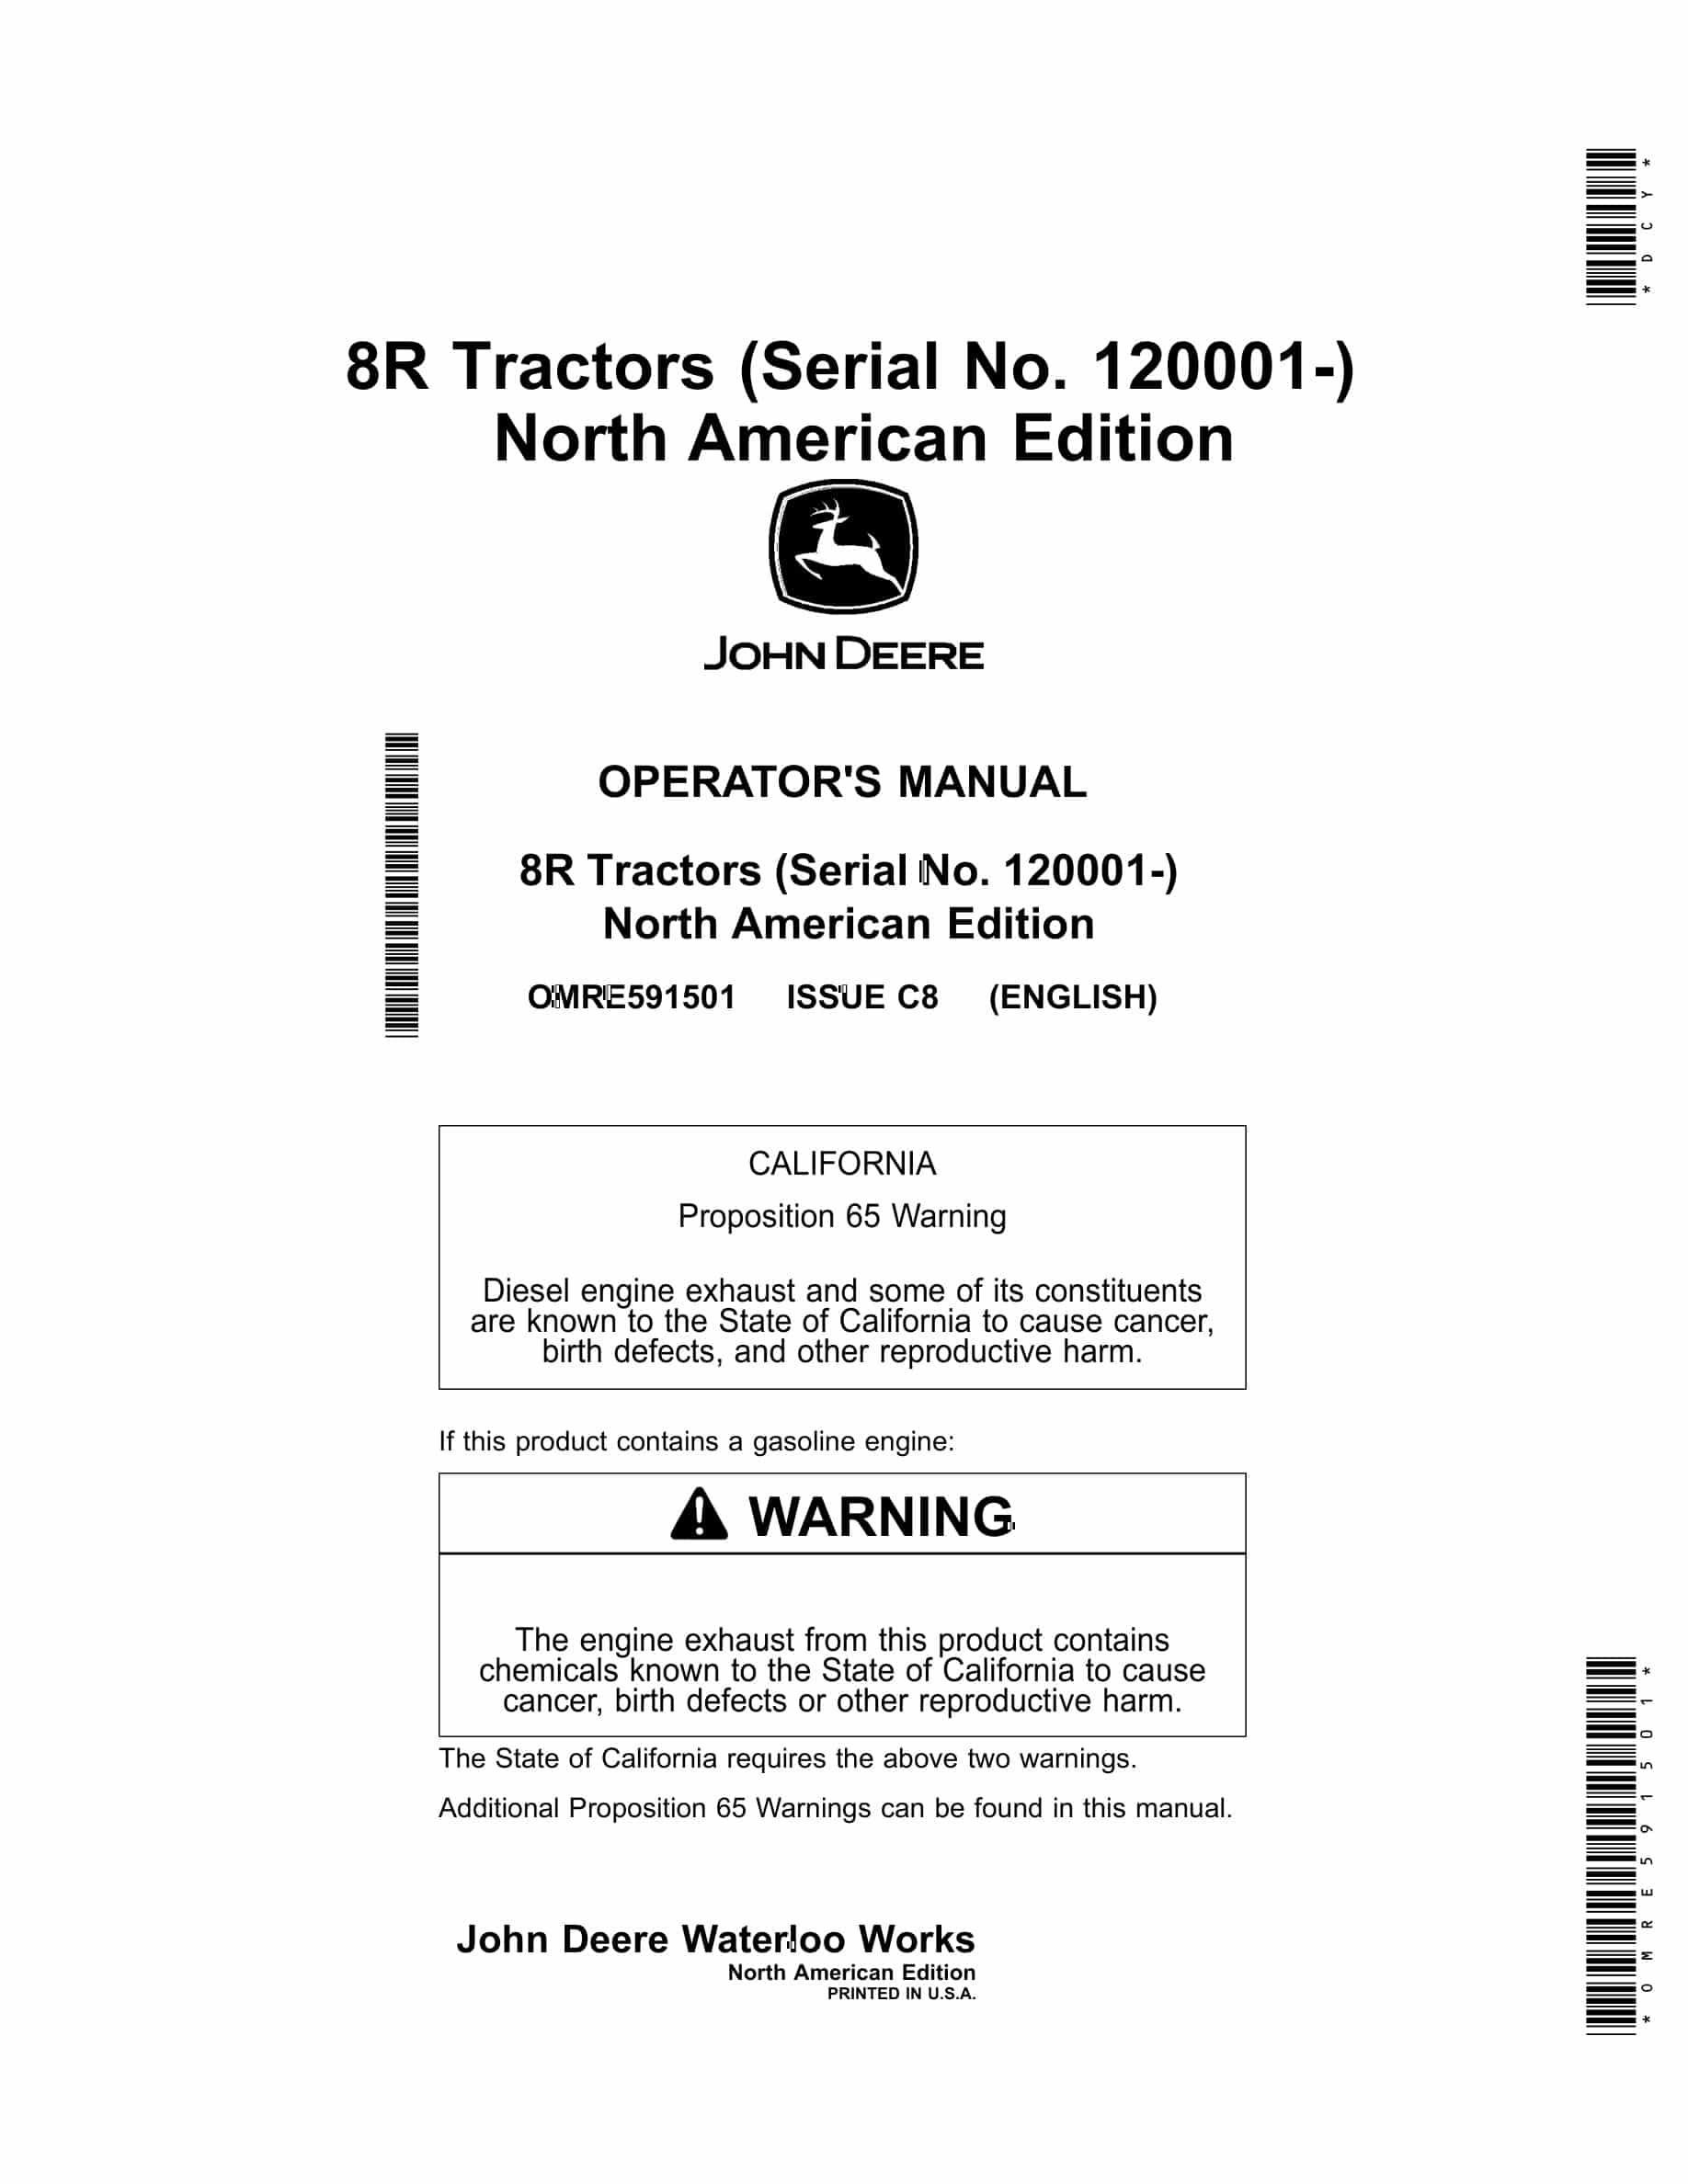 John Deere 8R Tractor Operator Manual OMRE591501-1